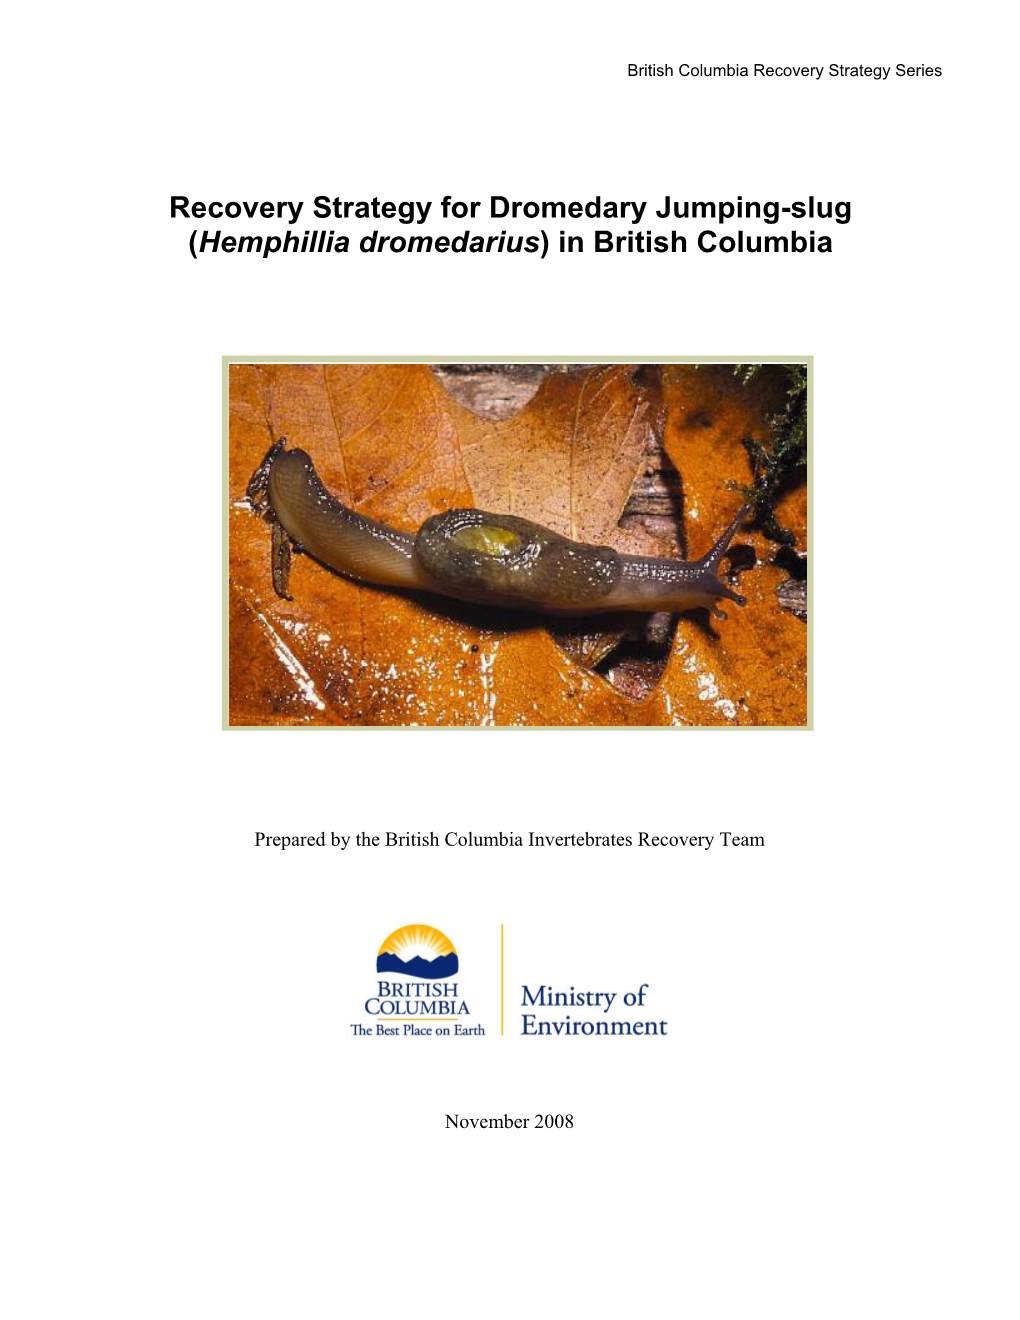 Recovery Strategy for Dromedary Jumping-Slug (Hemphillia Dromedarius) in British Columbia